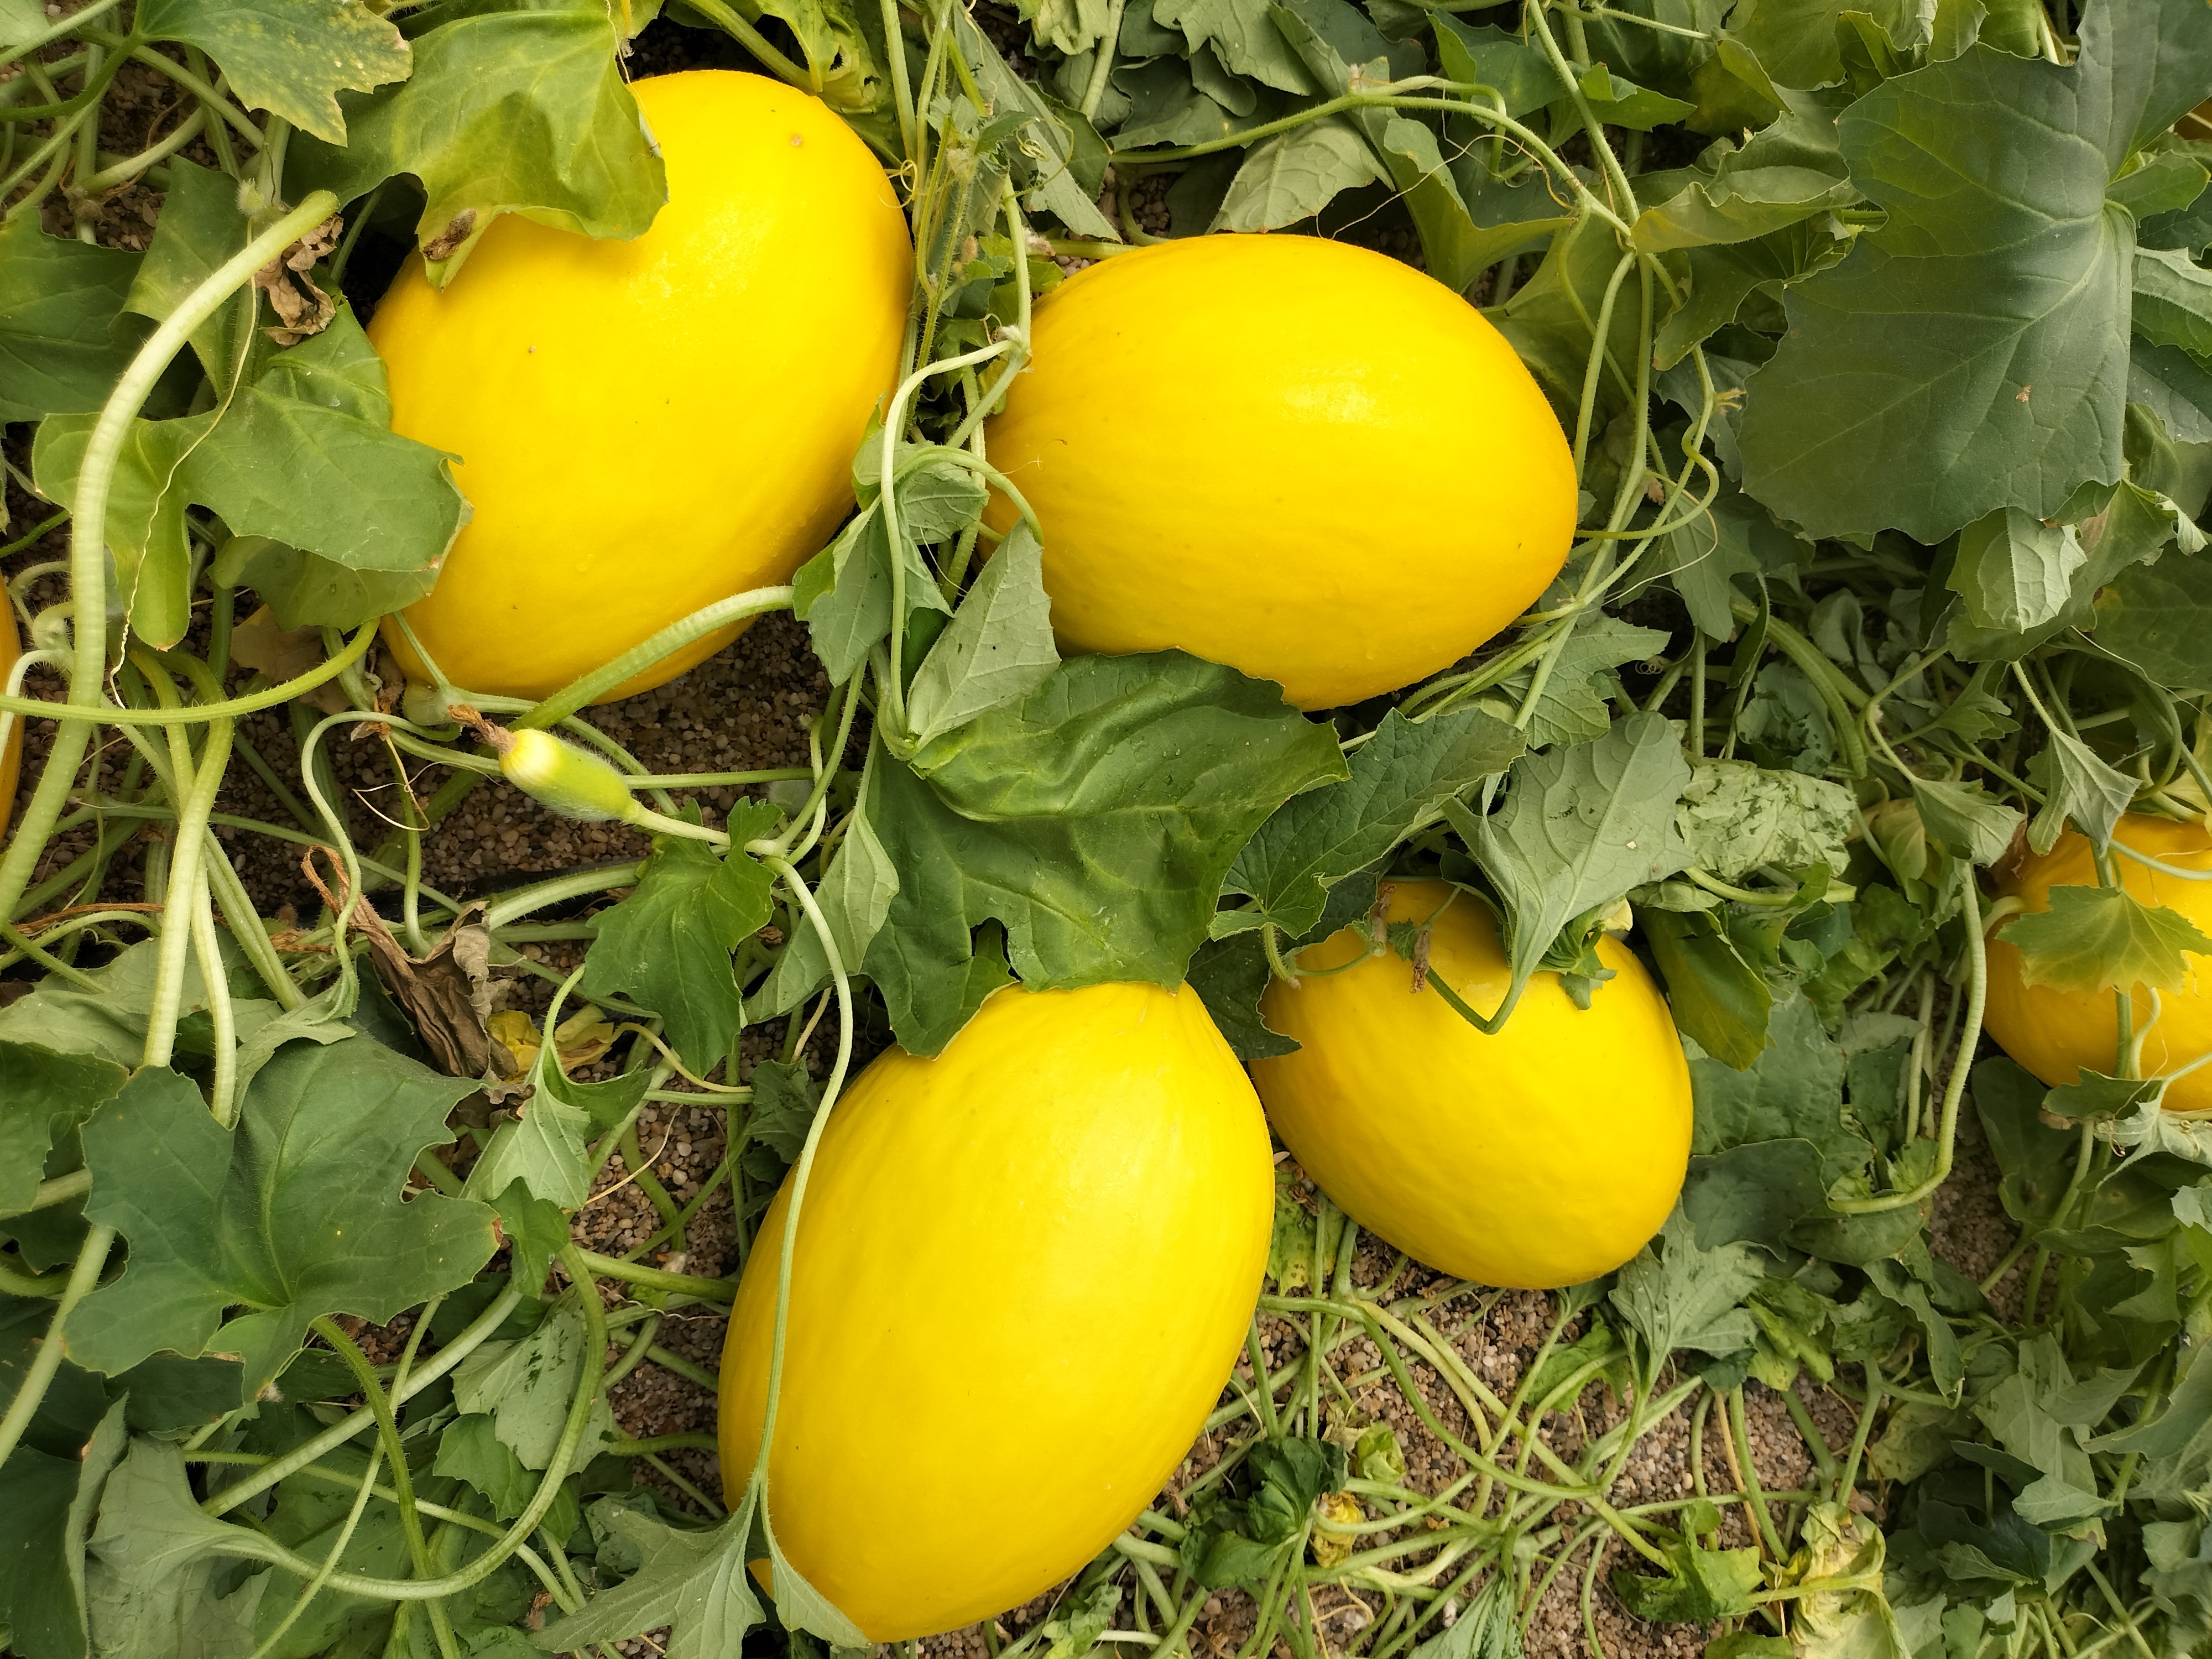 Semillas Fitó lanza Indurain en melón amarillo y Mojacar en galia